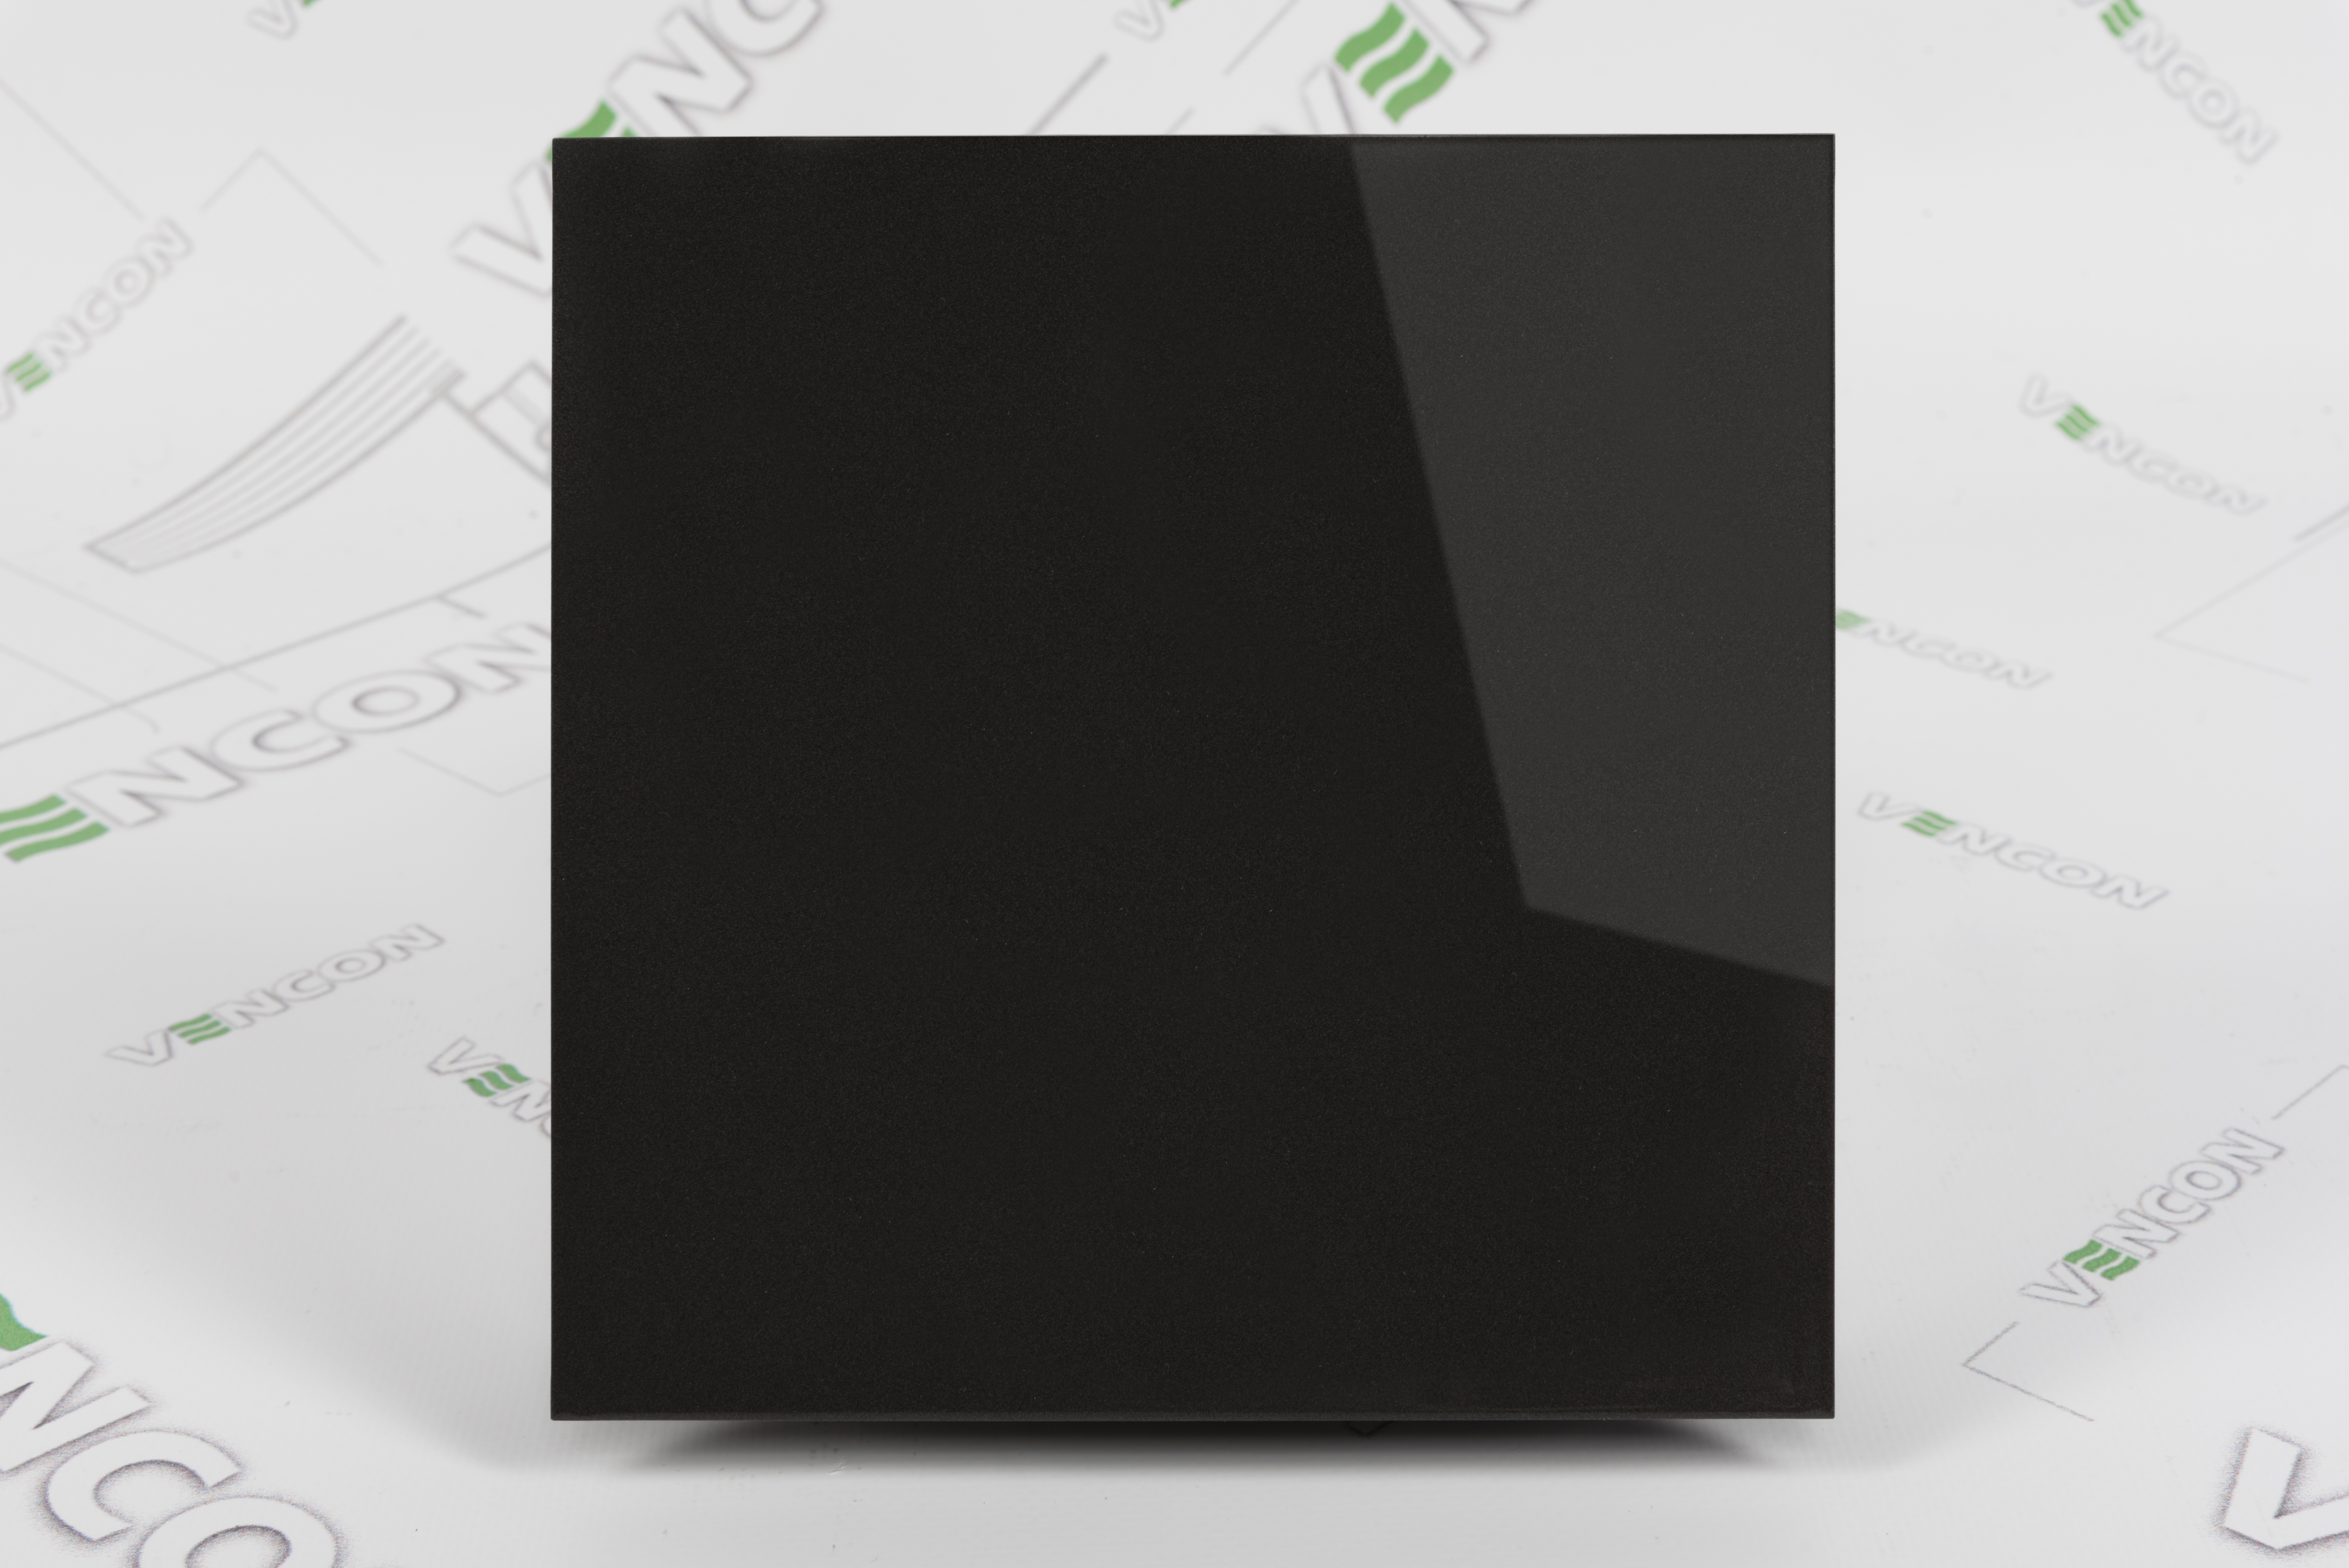 Вытяжной вентилятор Вентс 100 Солид T черный сапфир цена 2965.00 грн - фотография 2